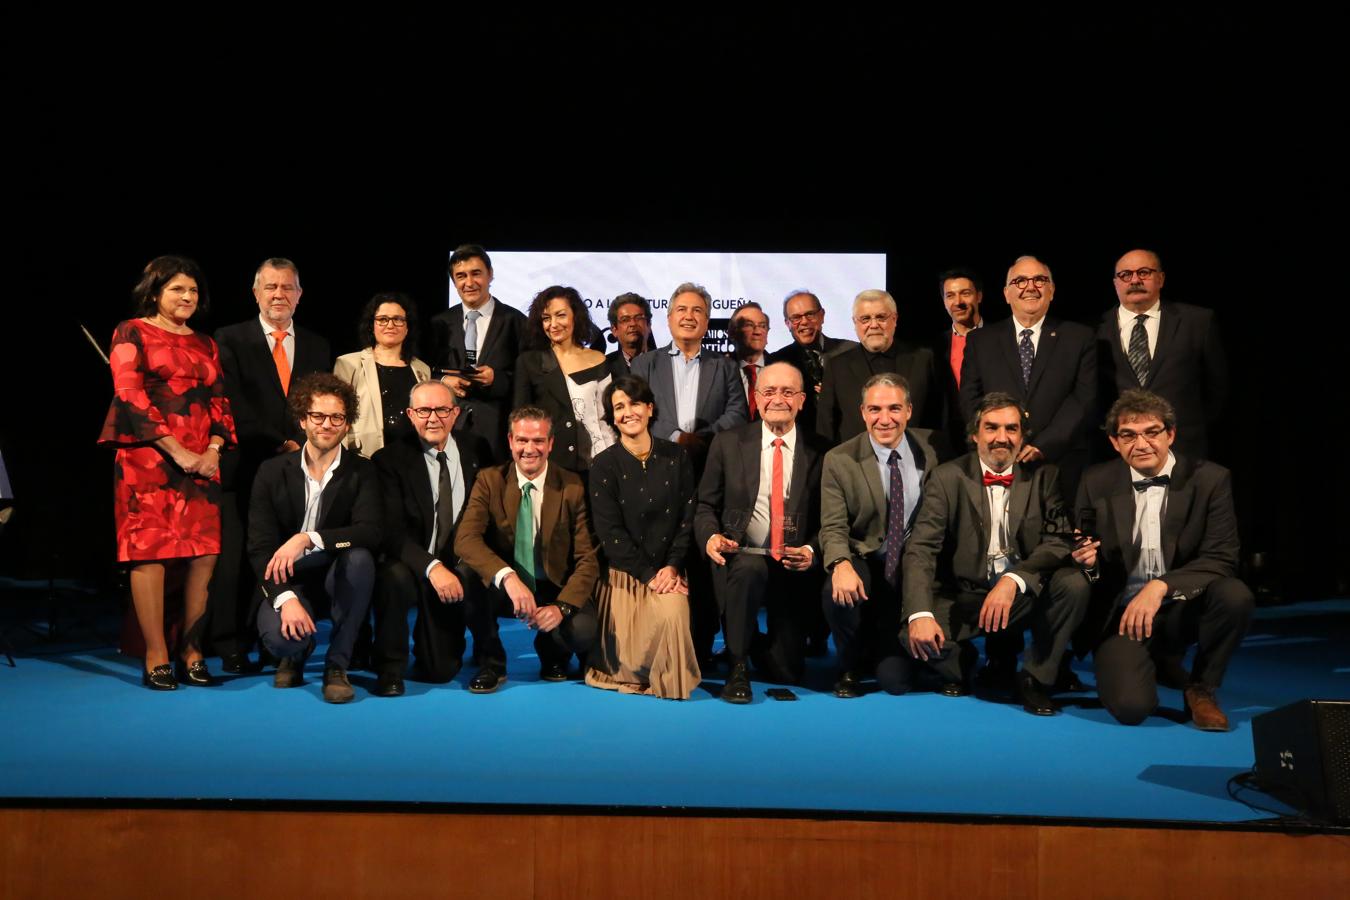 La Diputación rinde homenaje a Garrido Moraga con la entrega de sus galardones a la cultura malagueña. Foto de familia de todos los premiados con las autoridades, anoche tras la gala. 